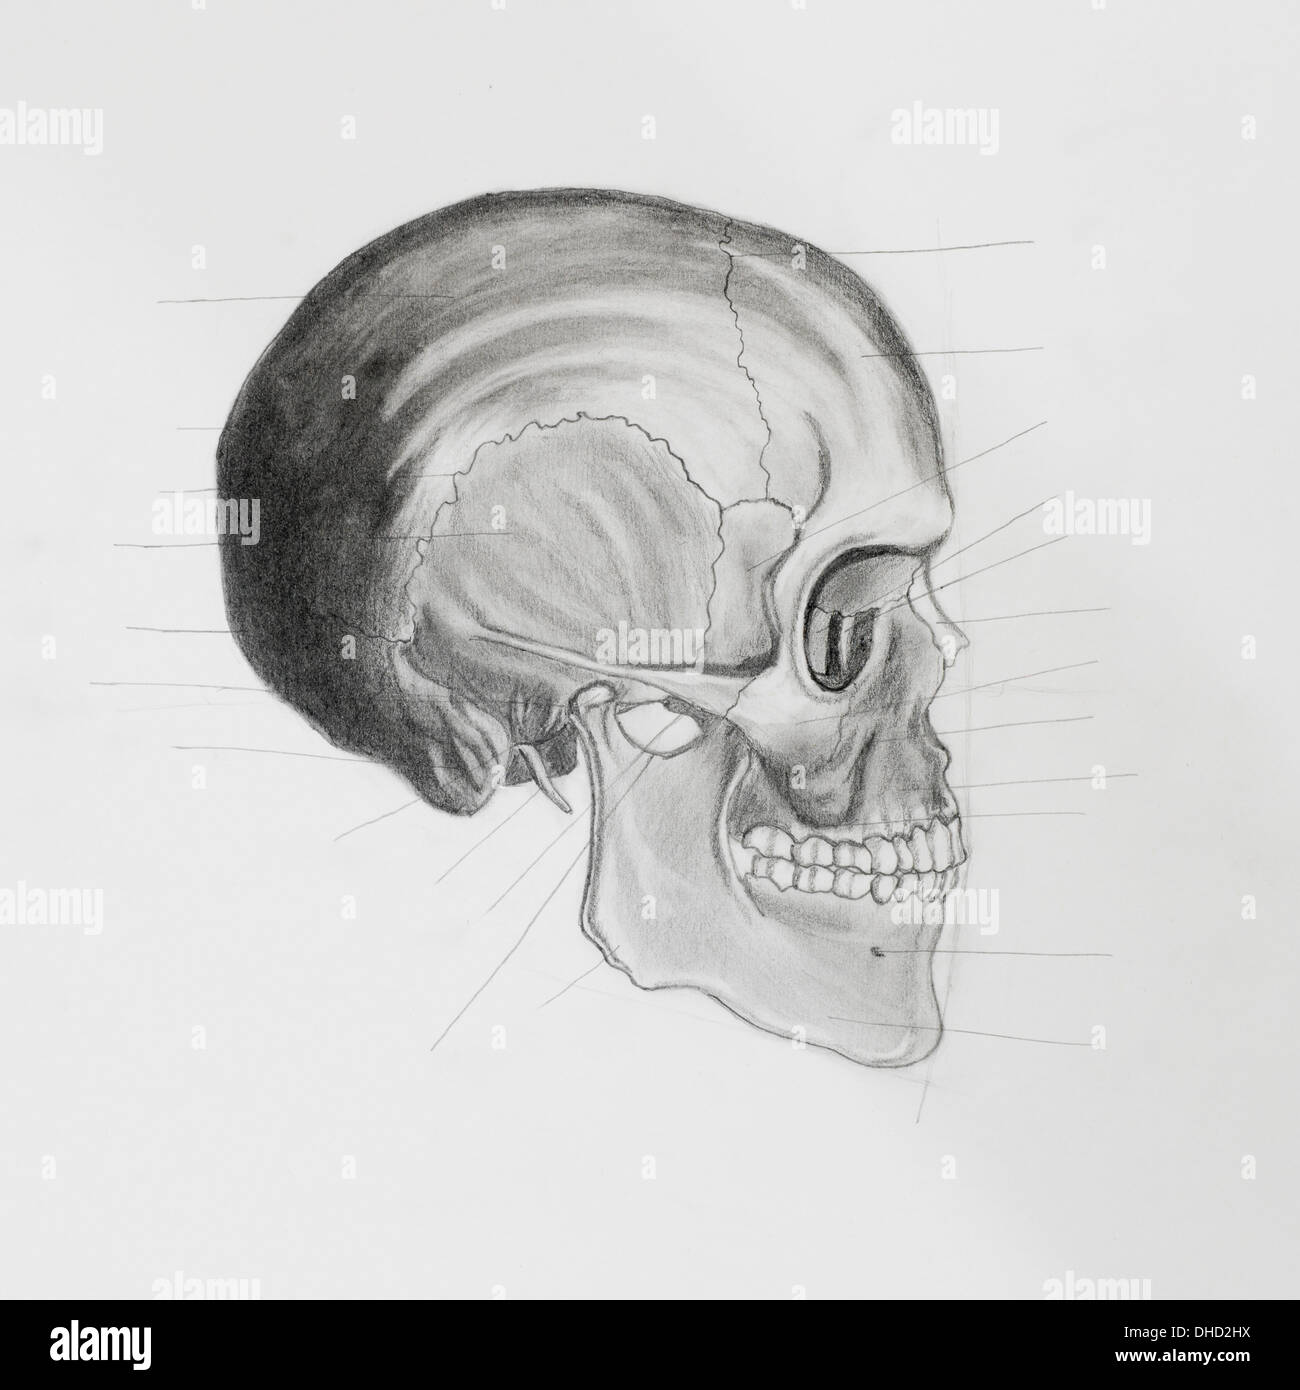 Crayon illustratin dessiné à la main, vue latérale du crâne humain à la directive lignes orientées à des pièces osseuses, sur papier blanc Banque D'Images